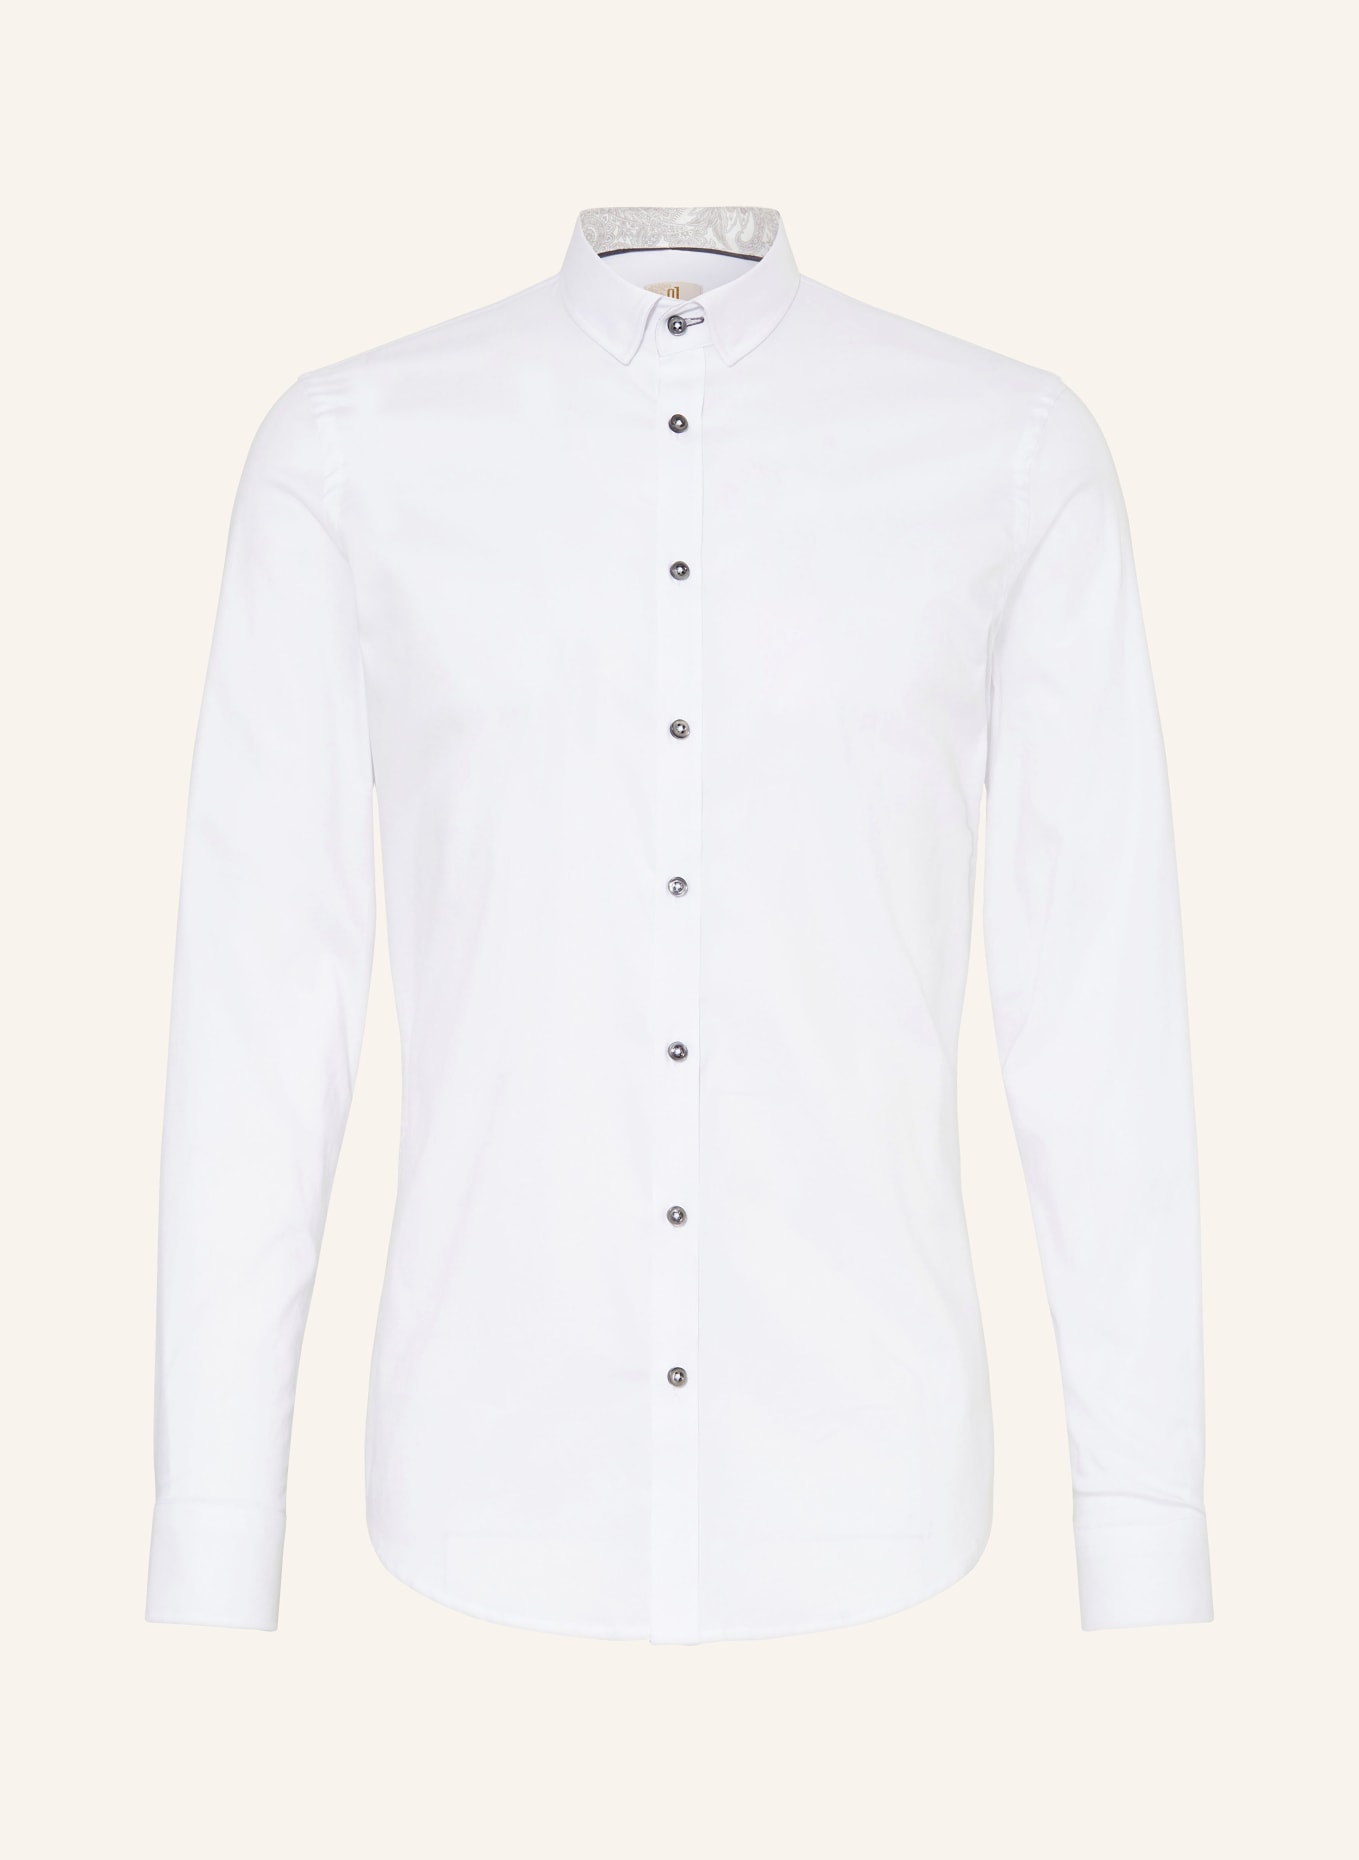 Q1 Manufaktur Hemd Extra Slim Fit, Farbe: WEISS/ GRAU (Bild 1)